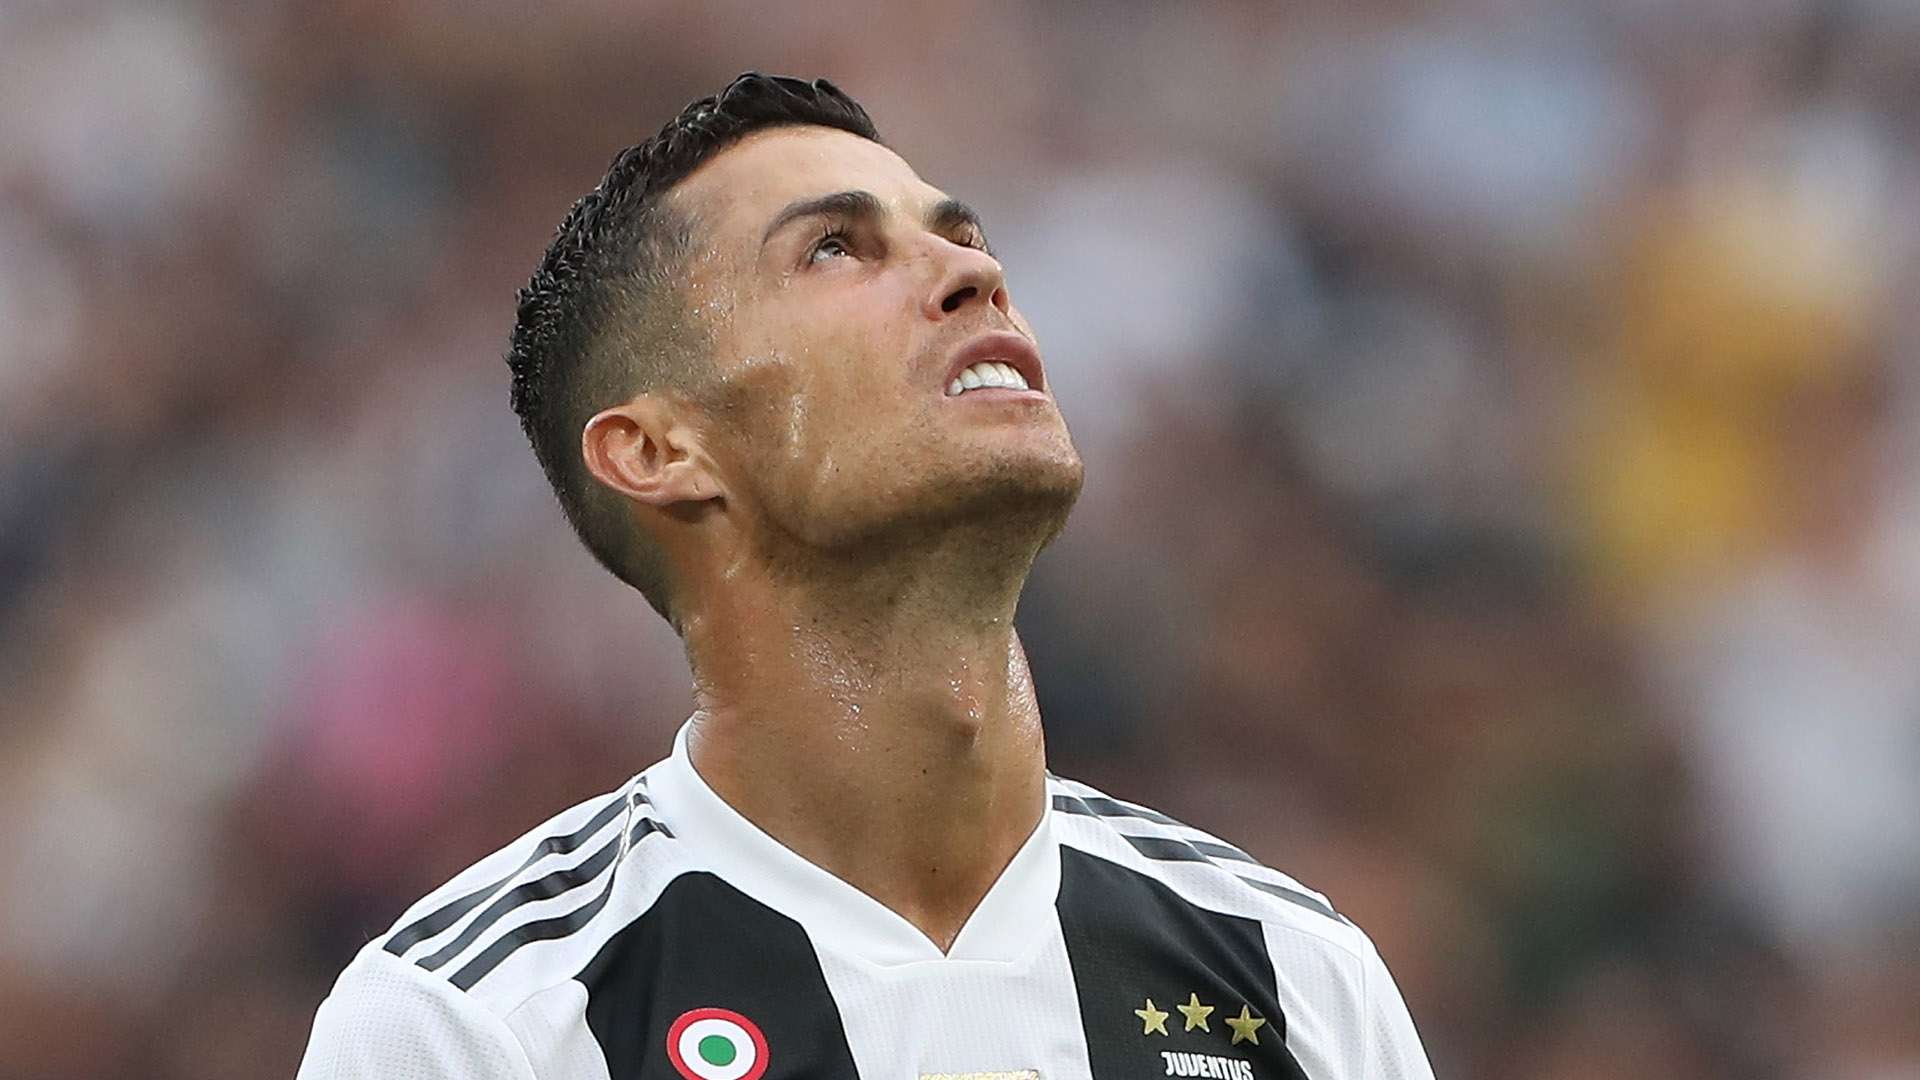 Cristiano Ronaldo Juventus